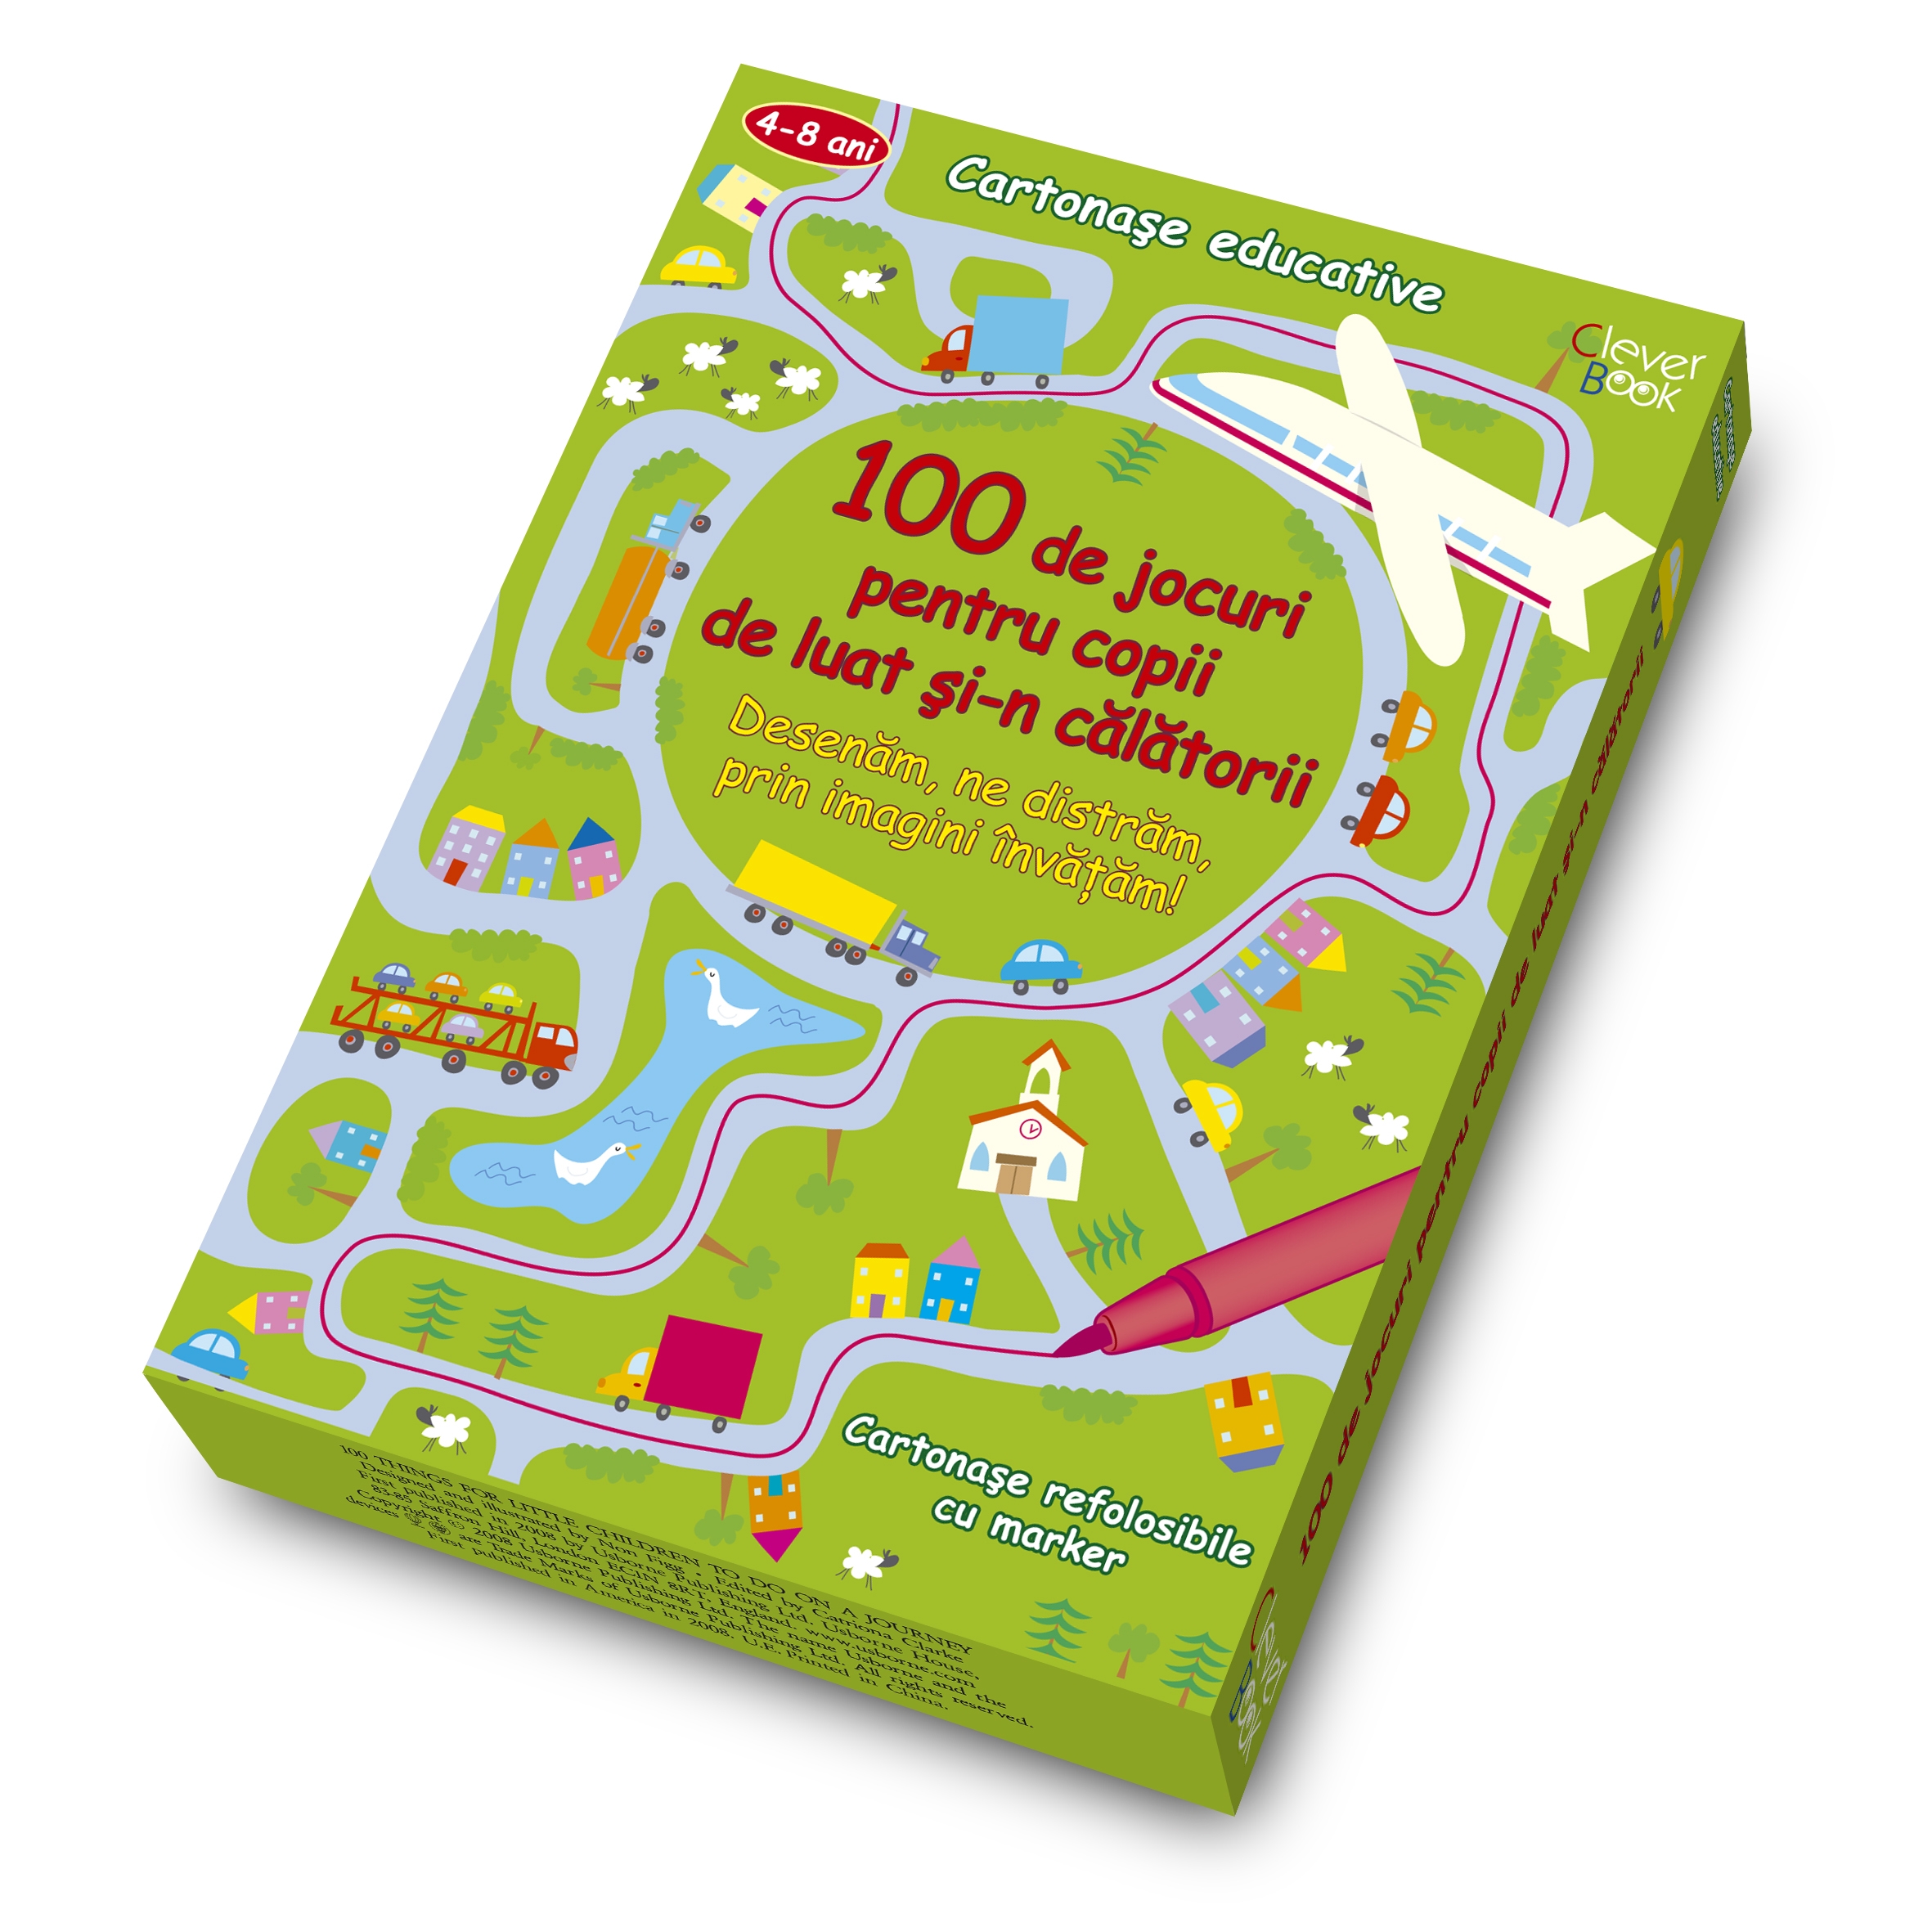 100 de jocuri pentru copii de luat si-n calatorii